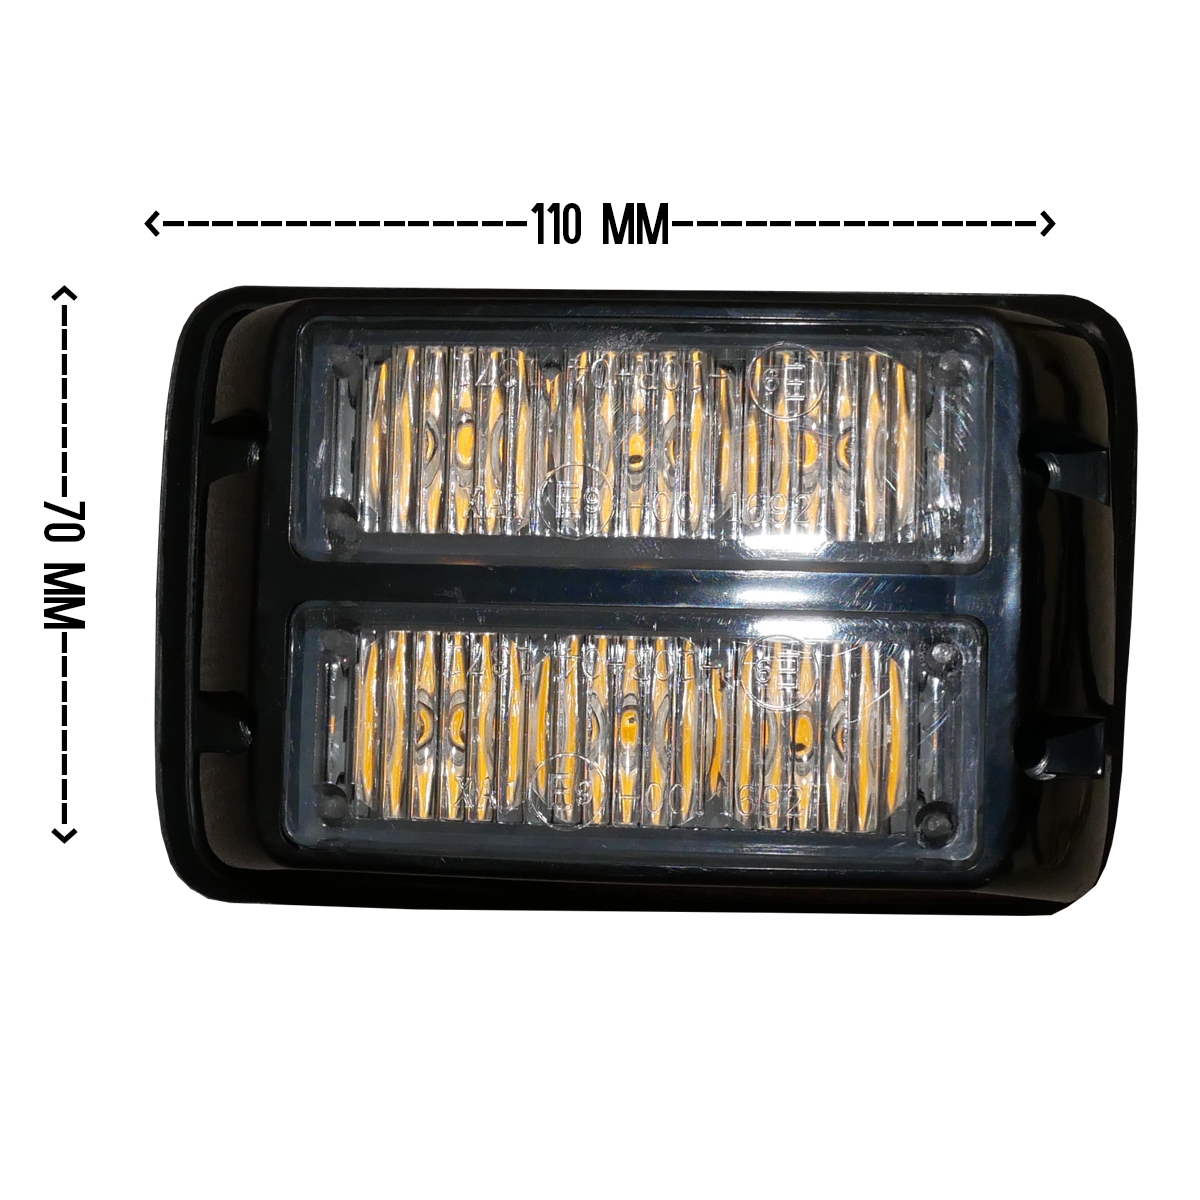 Lămpi de avertizare și girofaruri - Lampă stroboscop cu 6 LED-uri, 12-24V, R65 R10, fomcoshop.ro